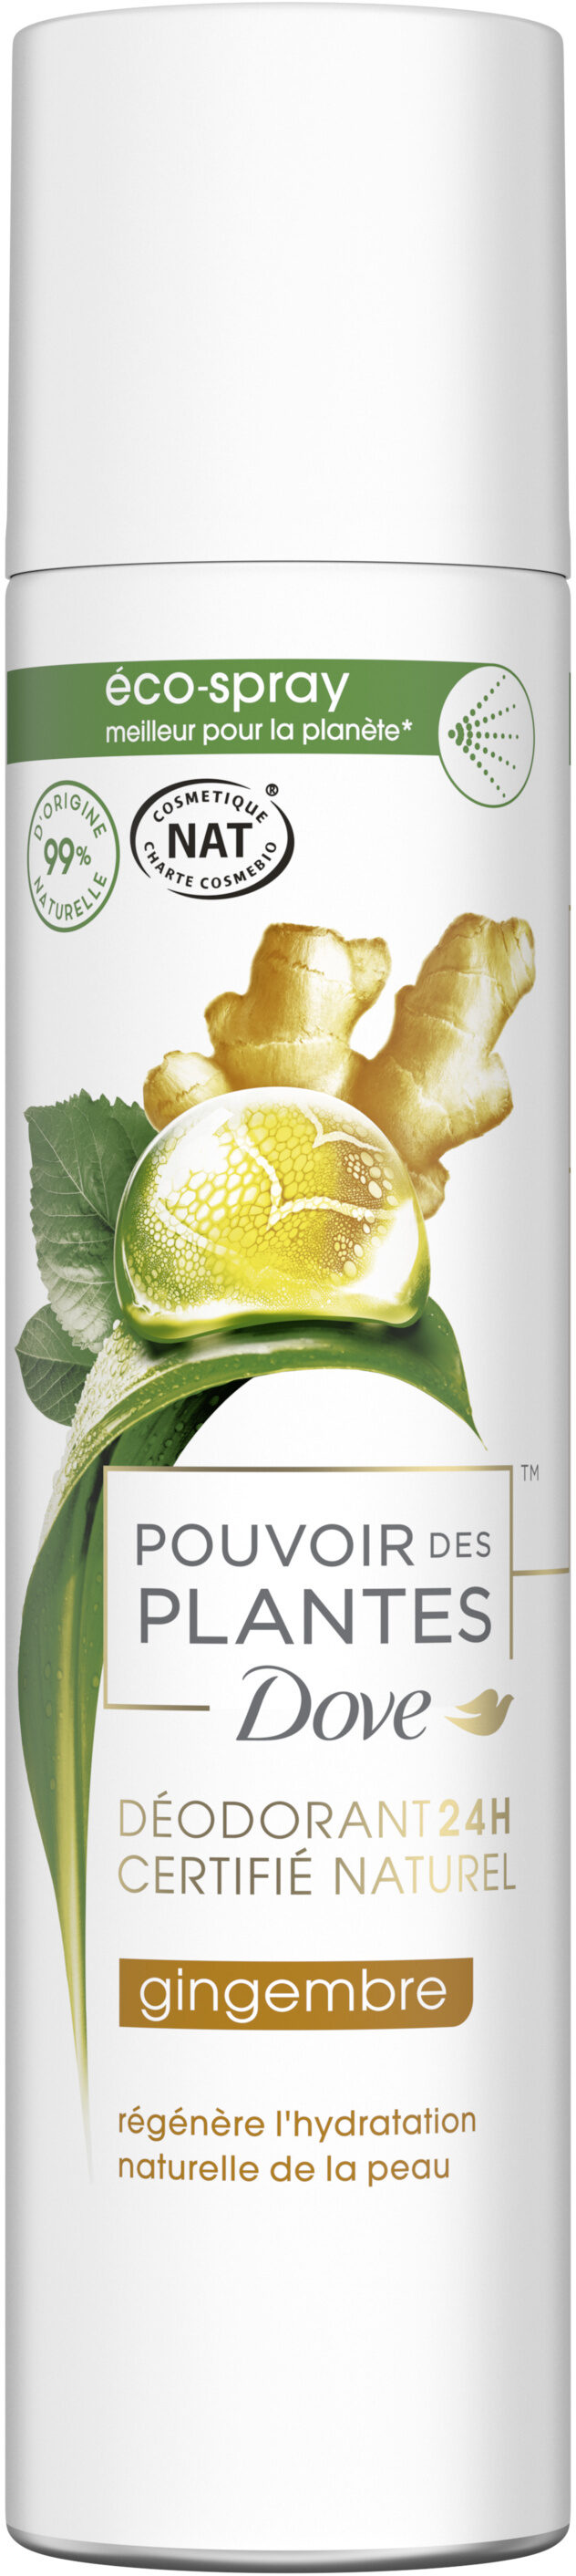 DOVE Déodorant Femme Spray Pouvoir des Plantes Gingembre 75ml - Product - fr